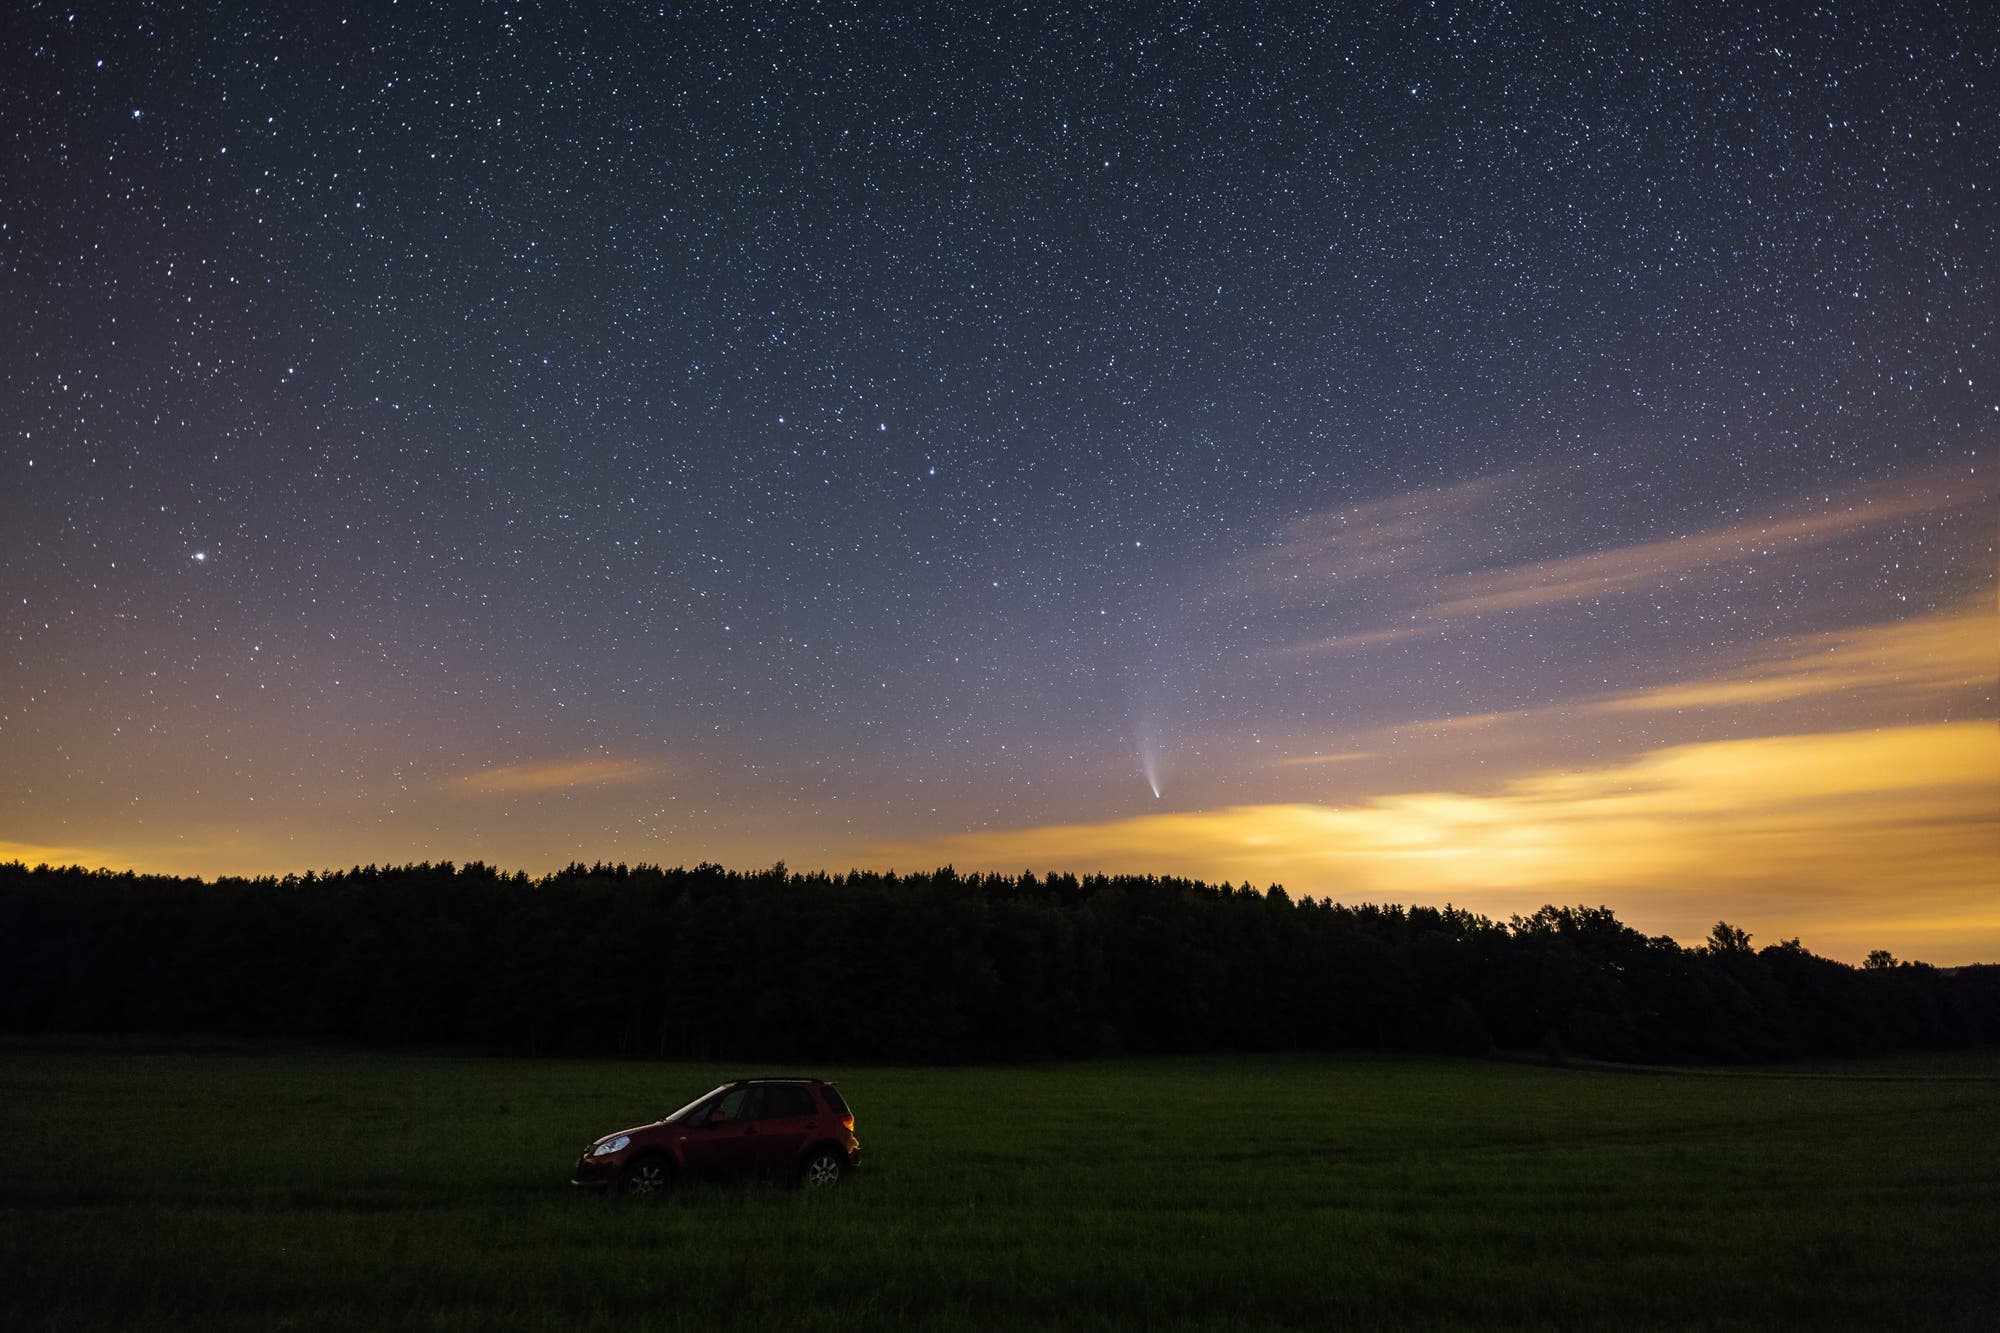 Erzgebirgshimmel, drei Wagen und ein Komet